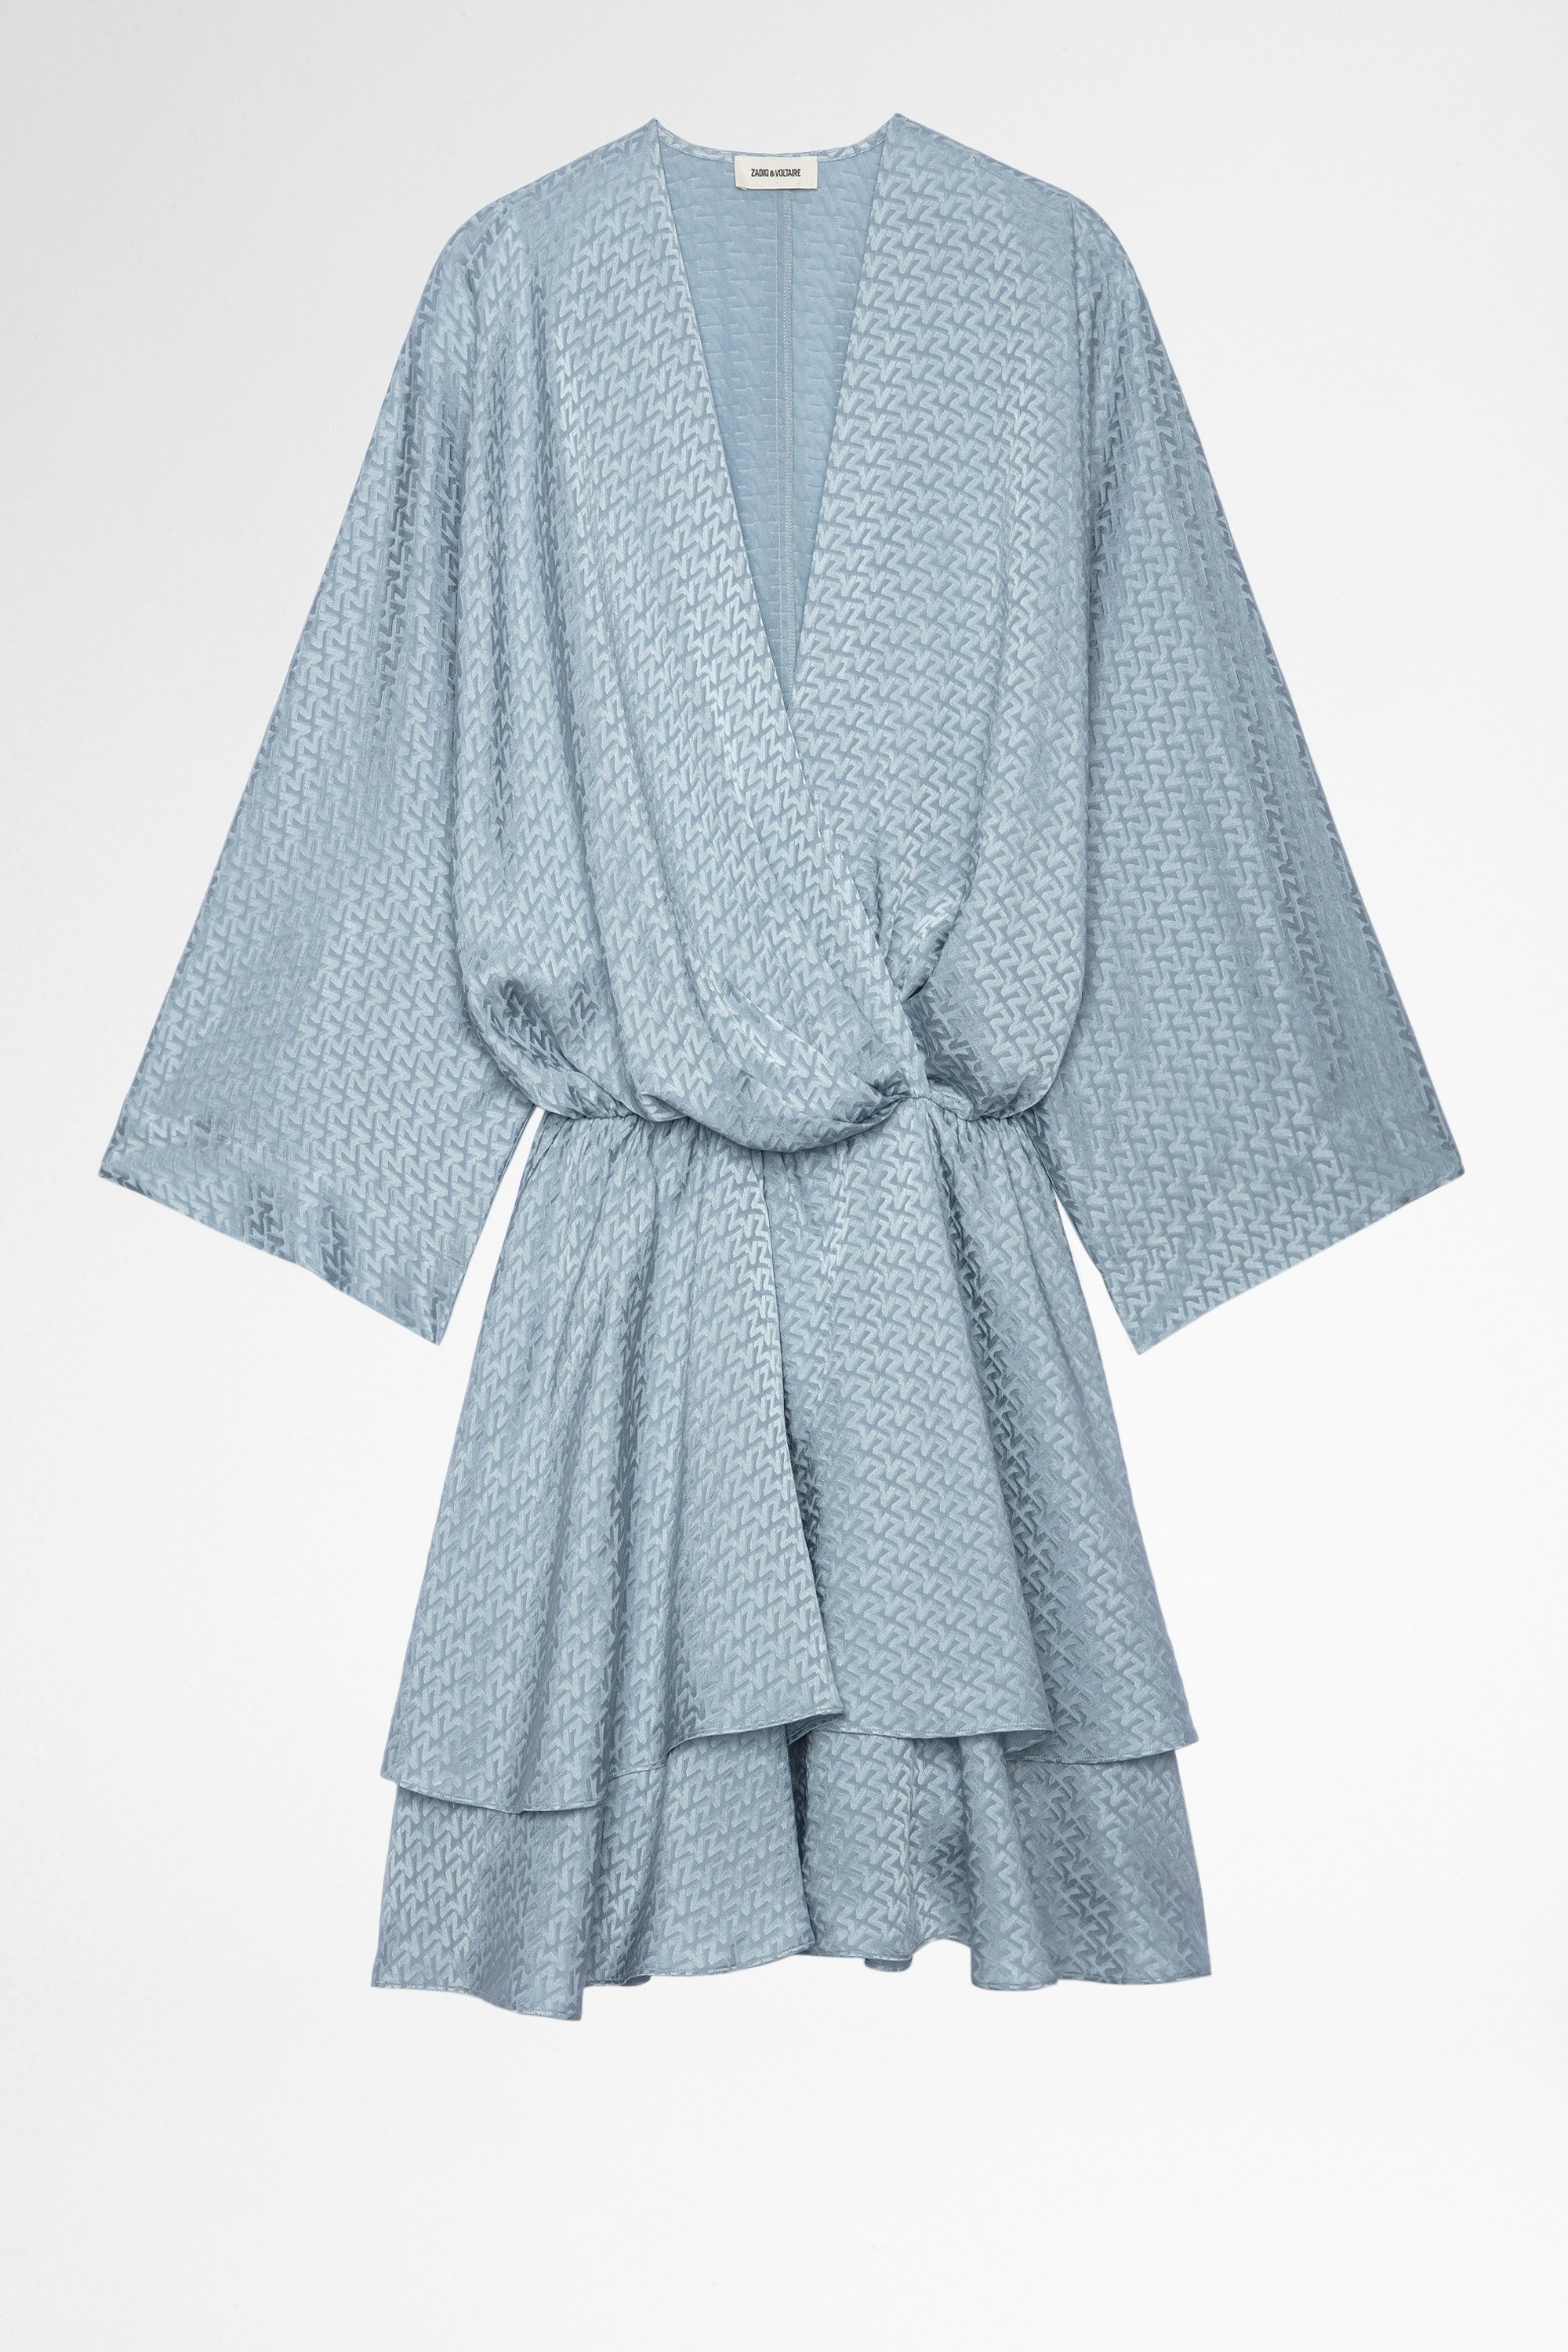 Hailey シルクドレス ZV silk jacquard dress in sky-blue